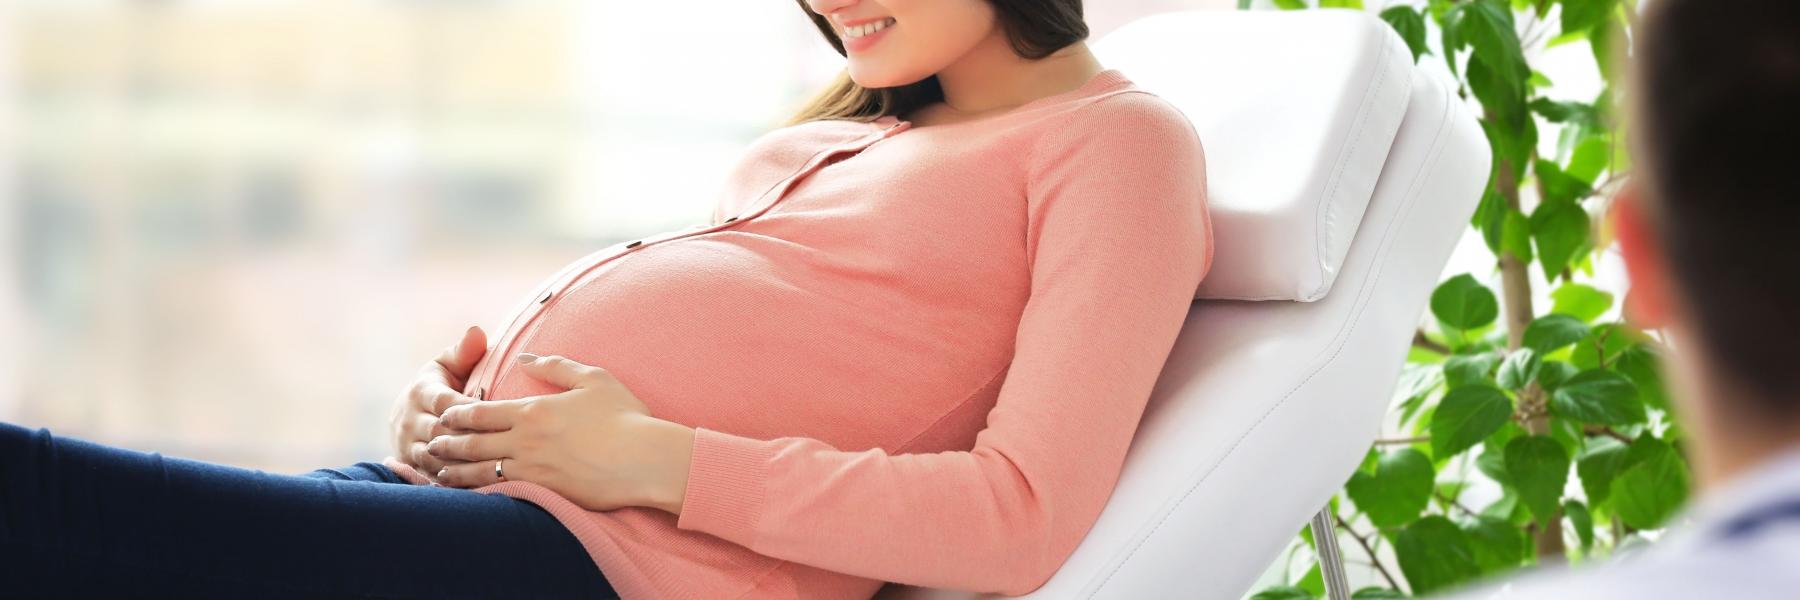 خطوات لتجنب تشقق البطن خلال فترة الحمل